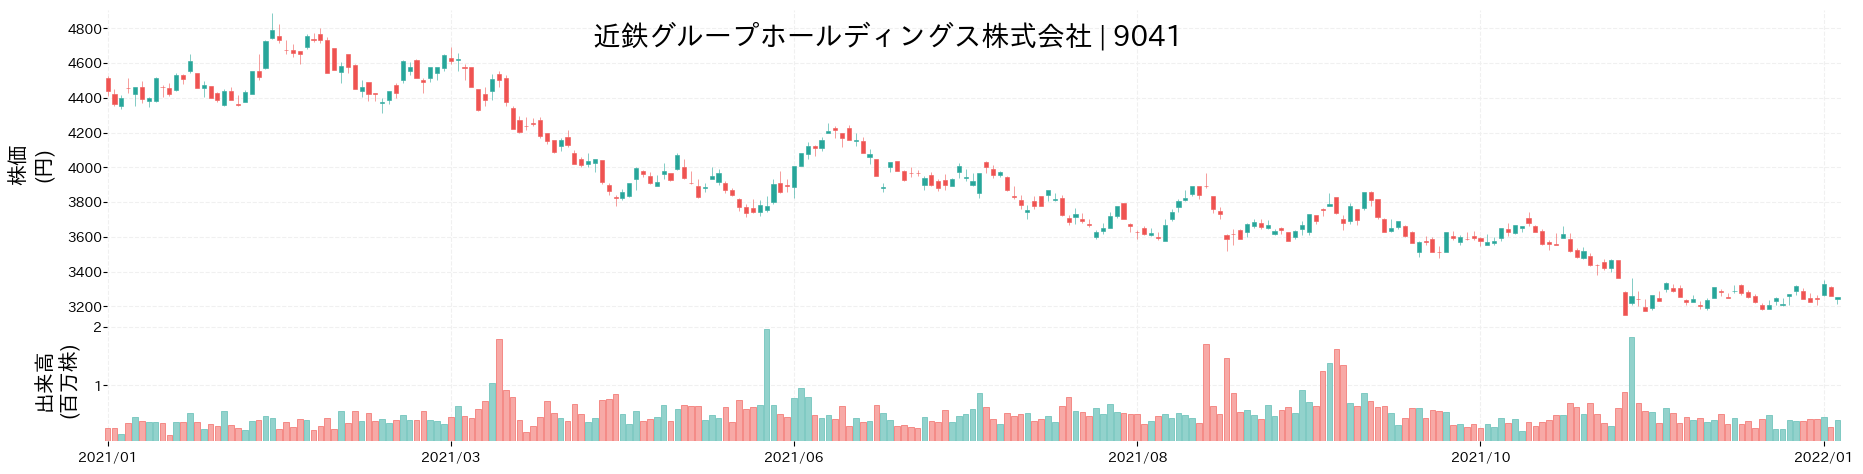 近鉄グループホールディングスの株価推移(2021)